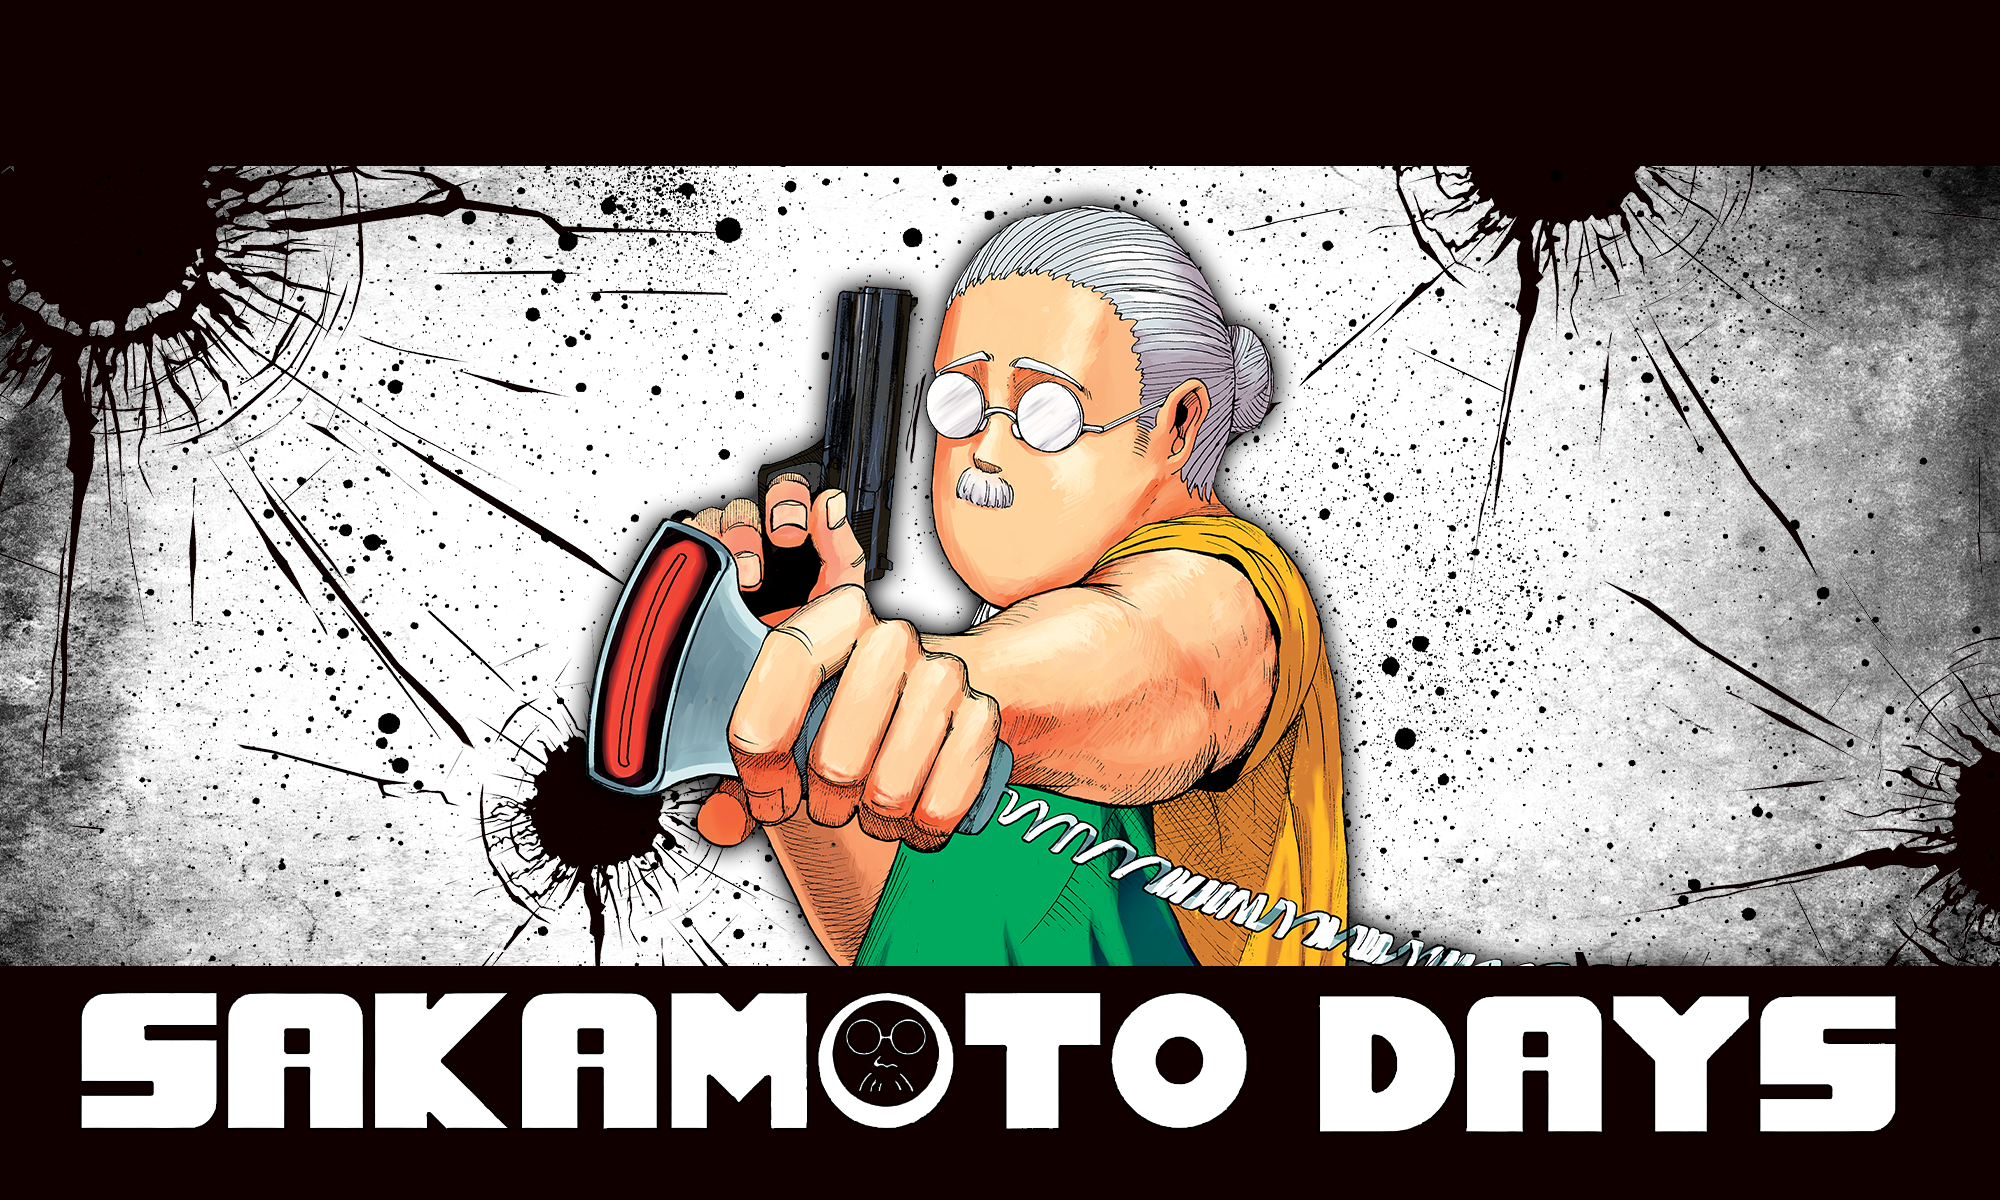 Anime 2000x1200 manga Sakamoto days Shonen Jump anime men anime gray hair glasses gun